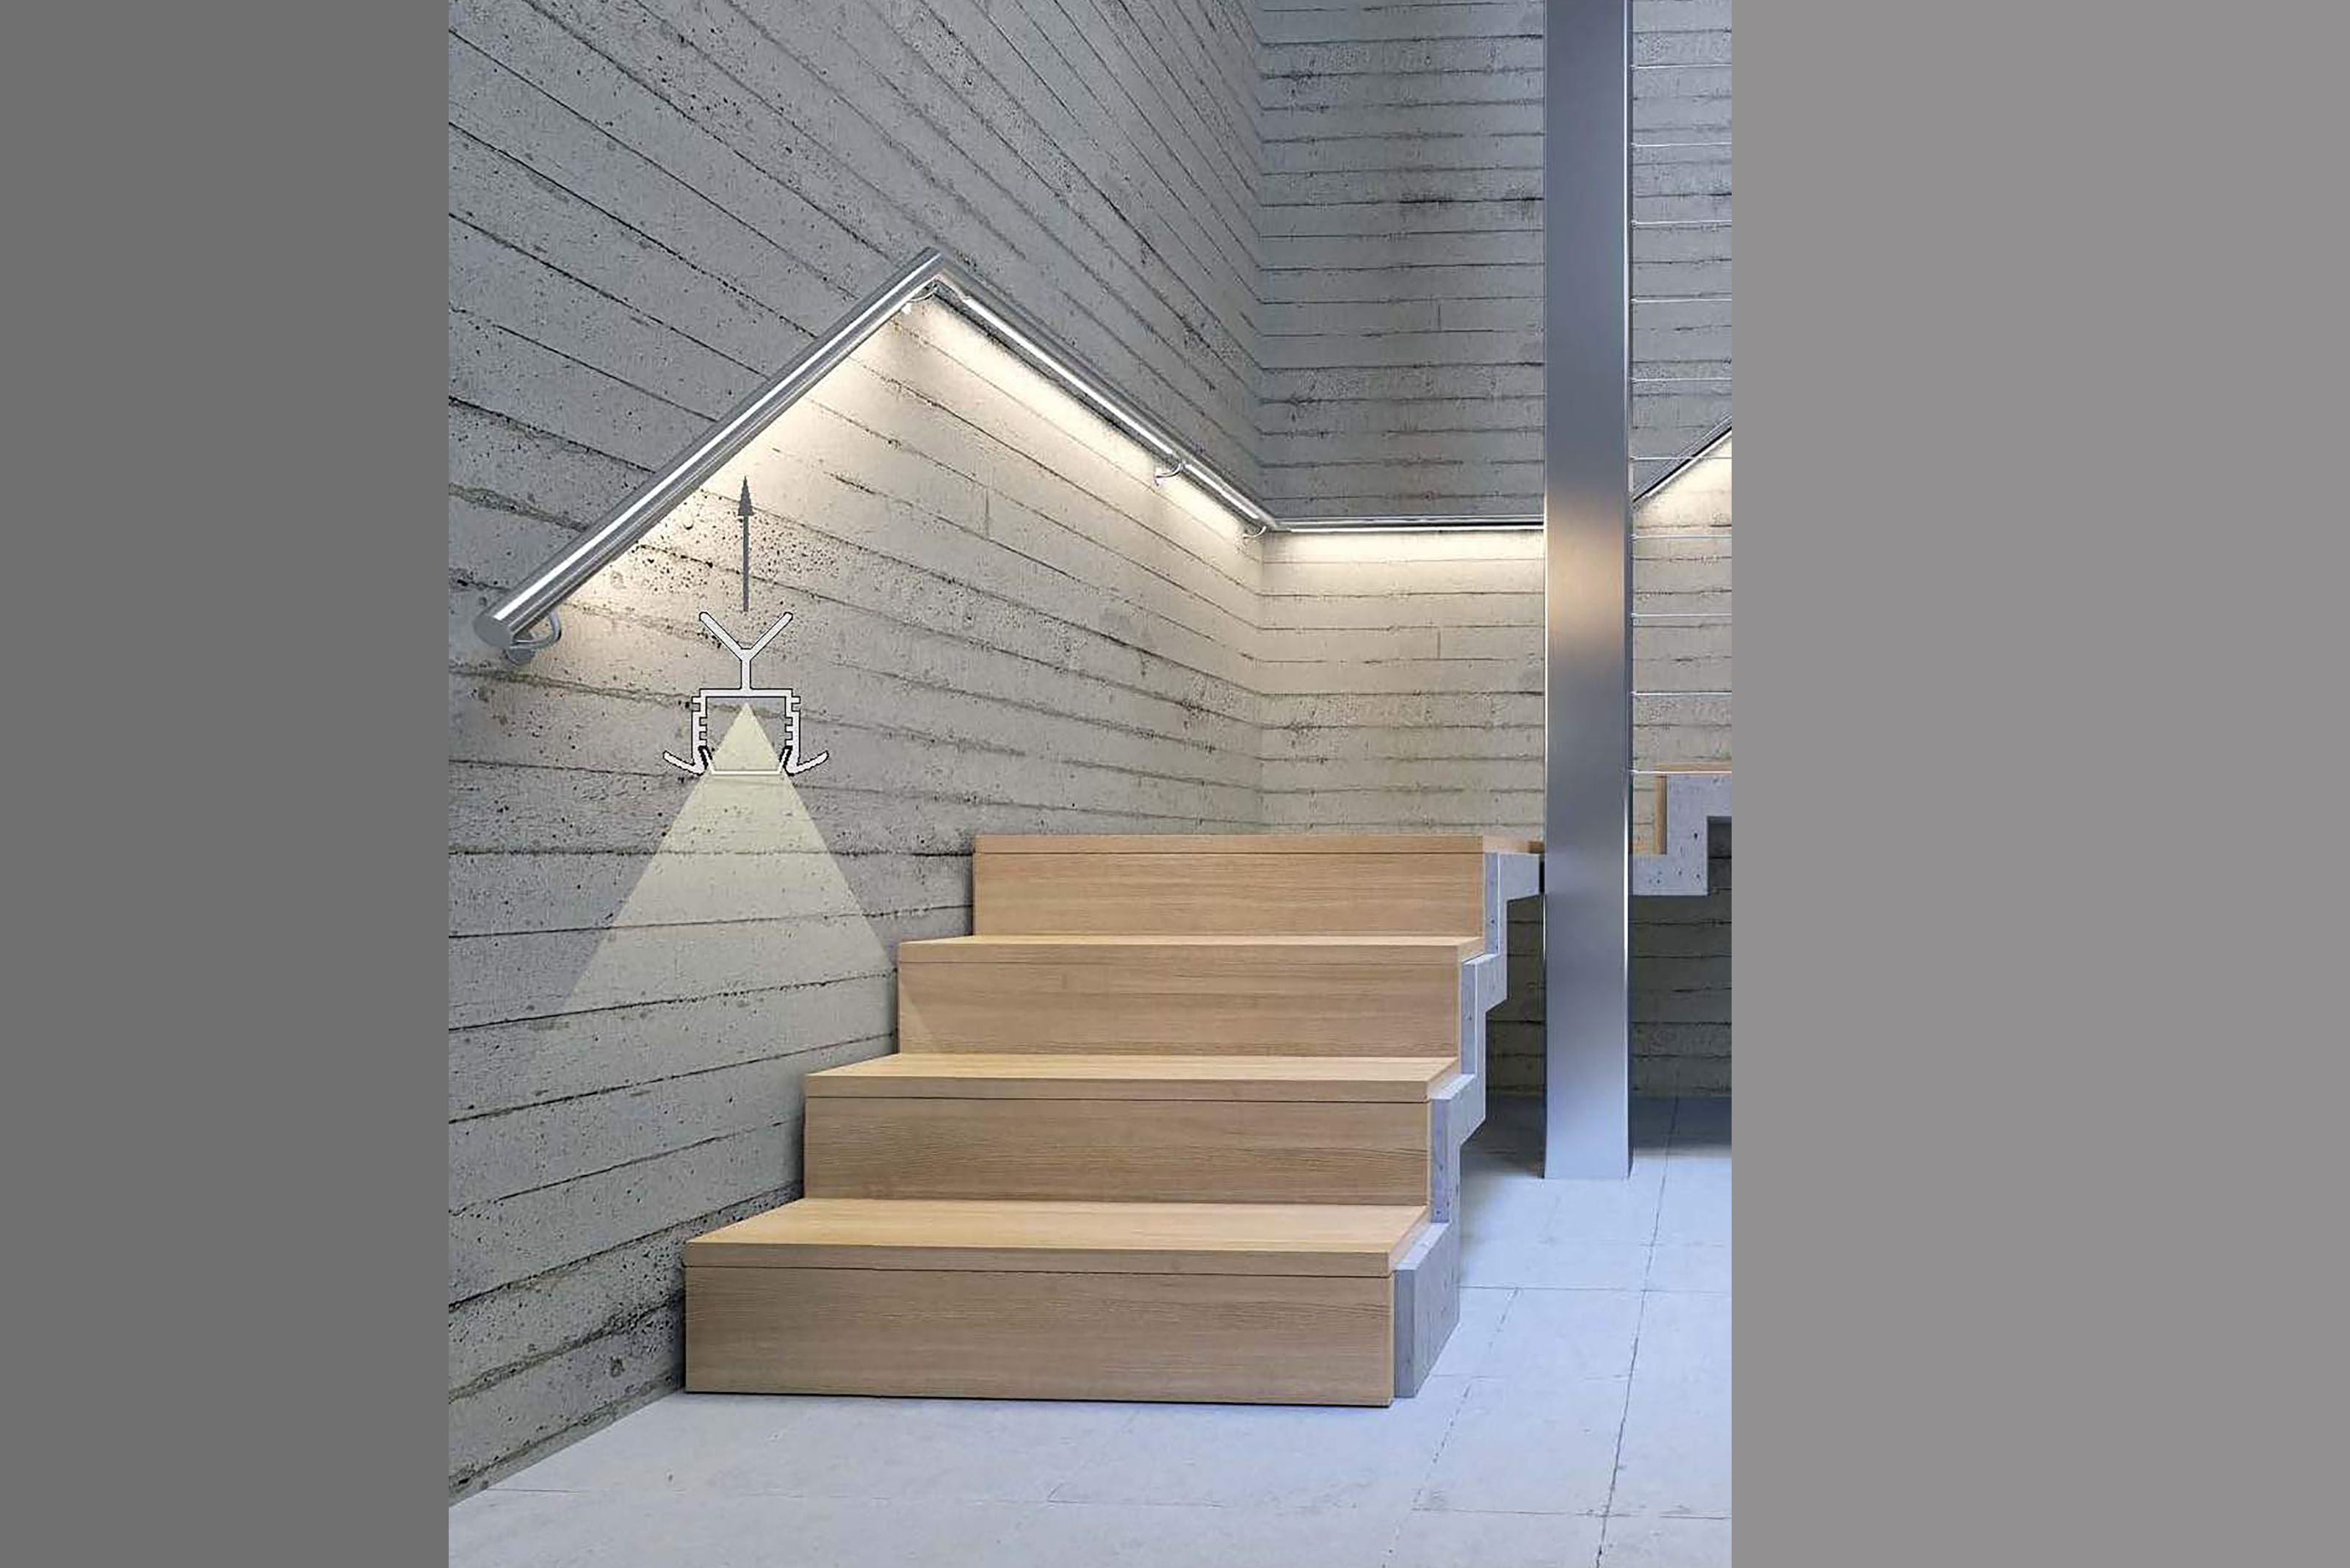 lightline-handrail-5-mj-lighting-v2